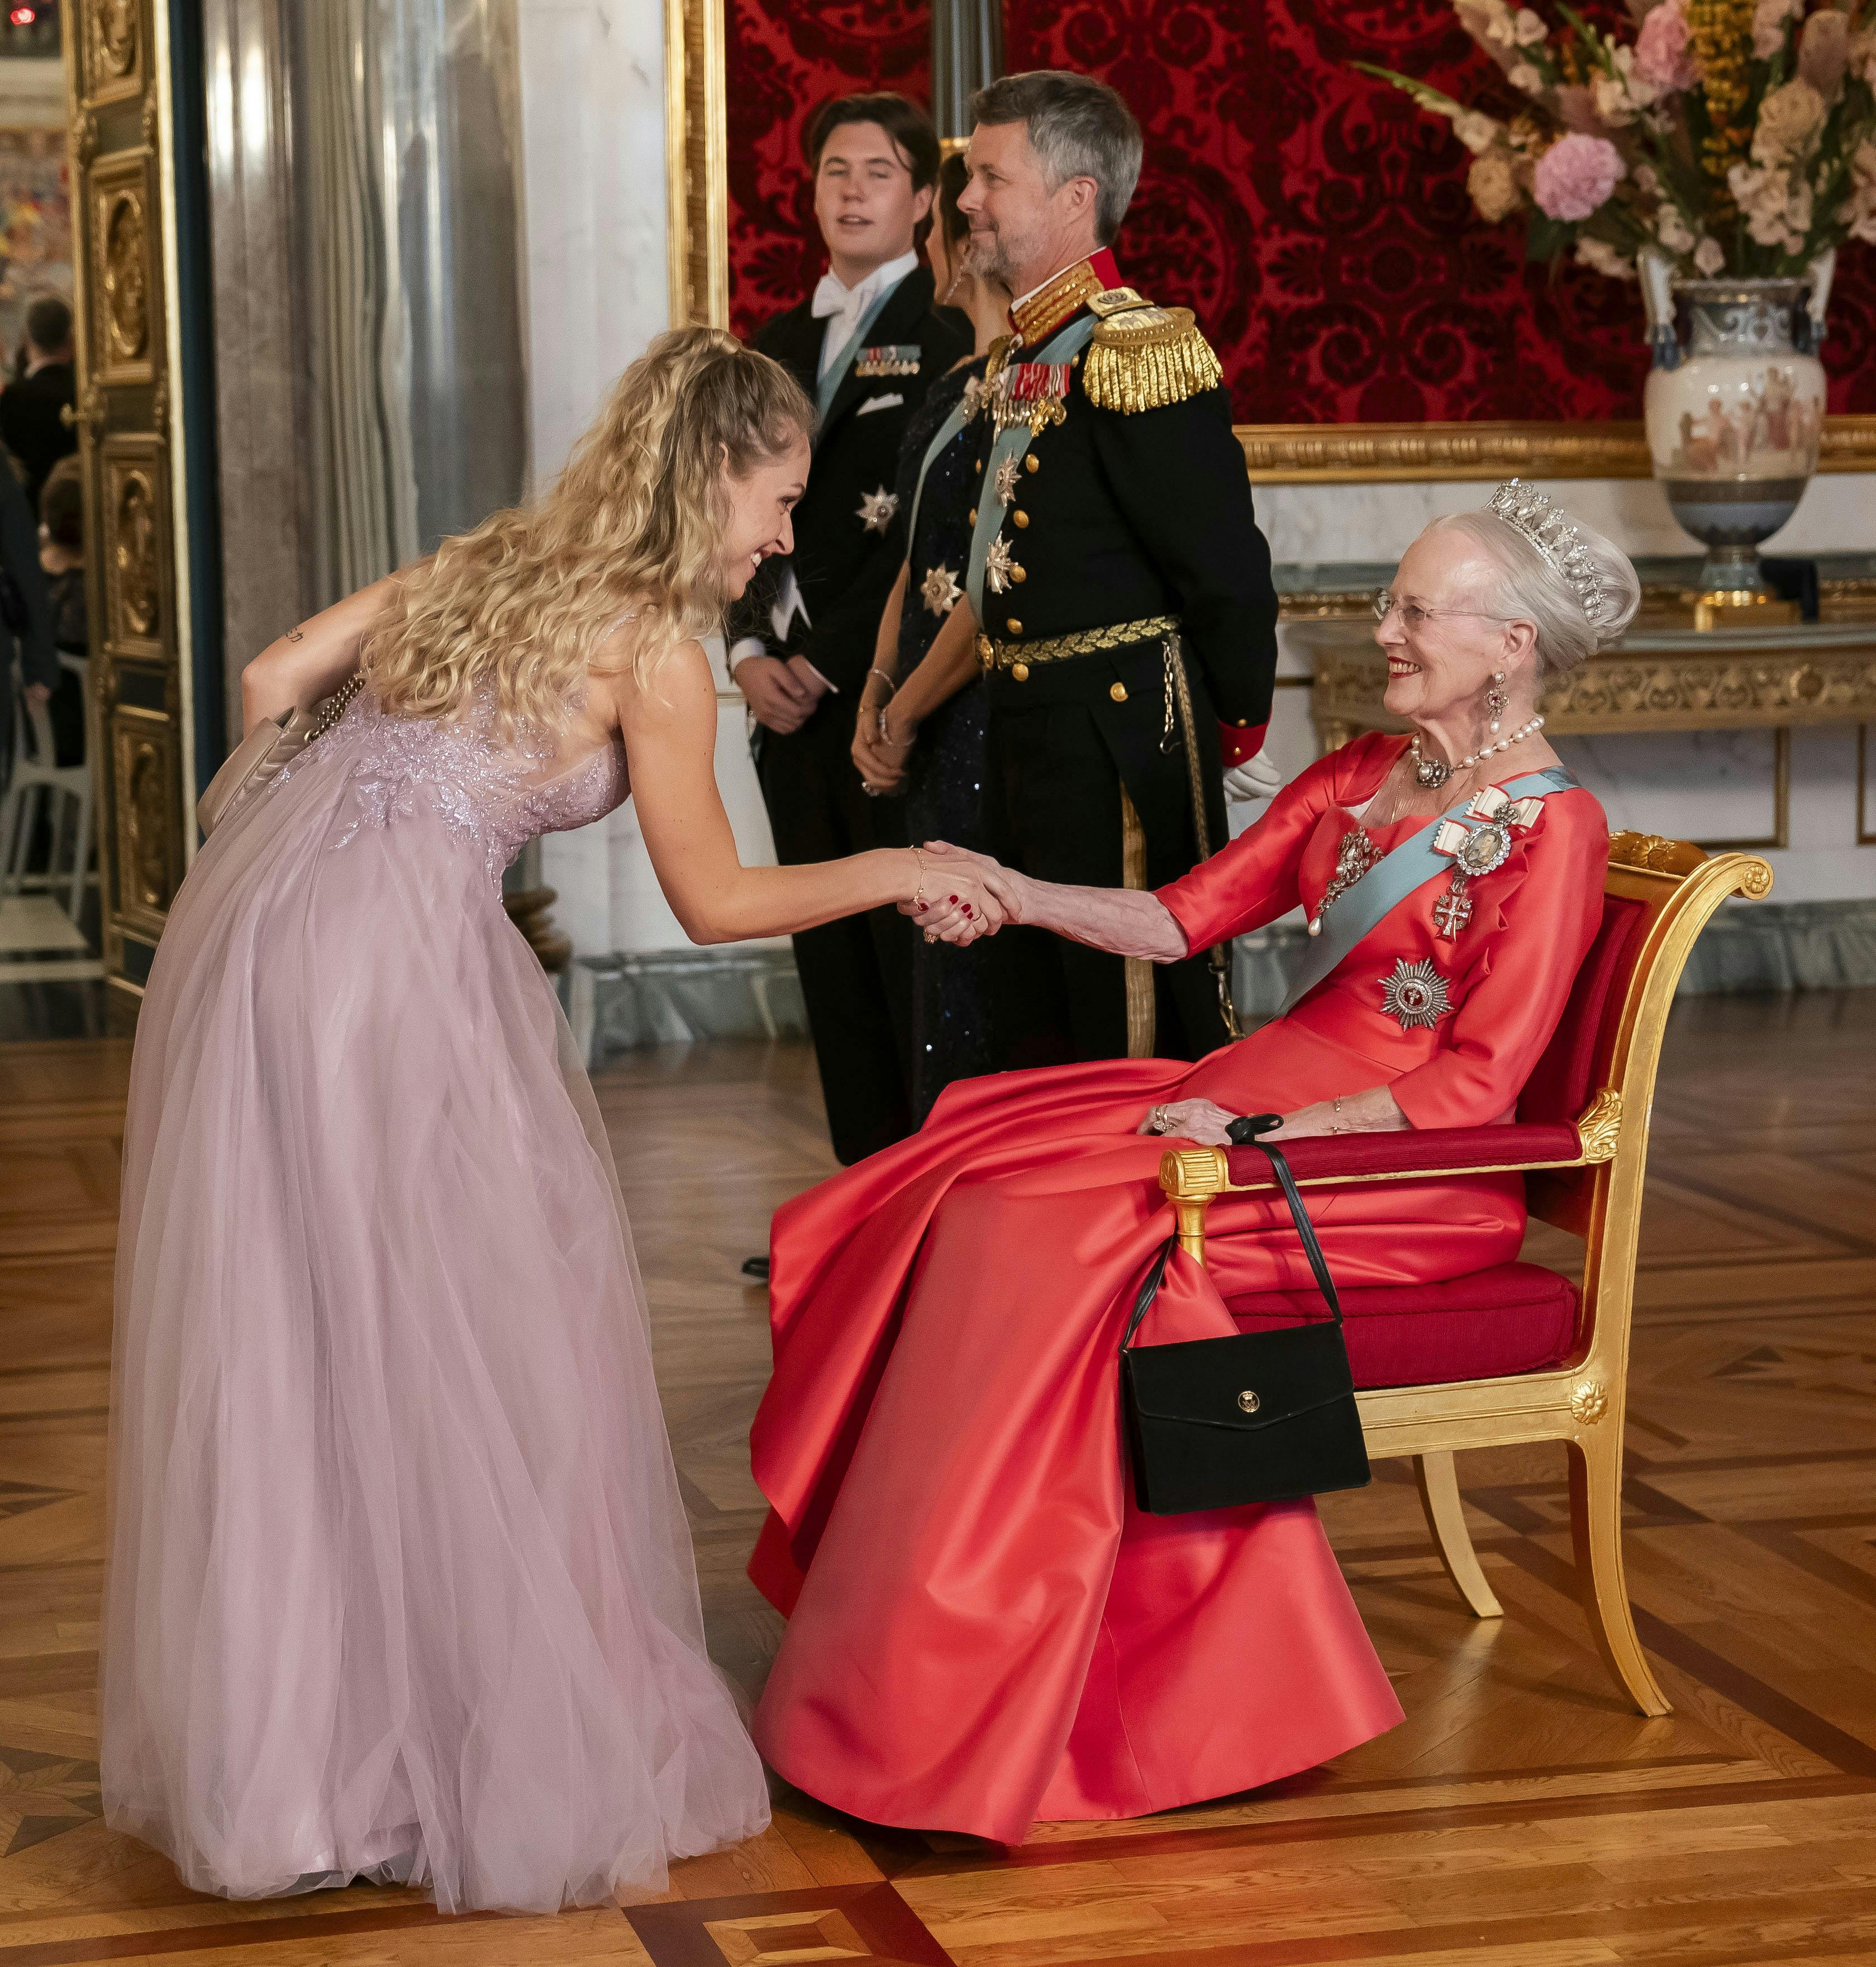 Selvom Jasmin Lind kom for sent, fik hun altså stadig æren af at hilse personligt på dronning Margrethe, kronprins Frederik, kronprinsesse Mary og fødselaren prins Christian.